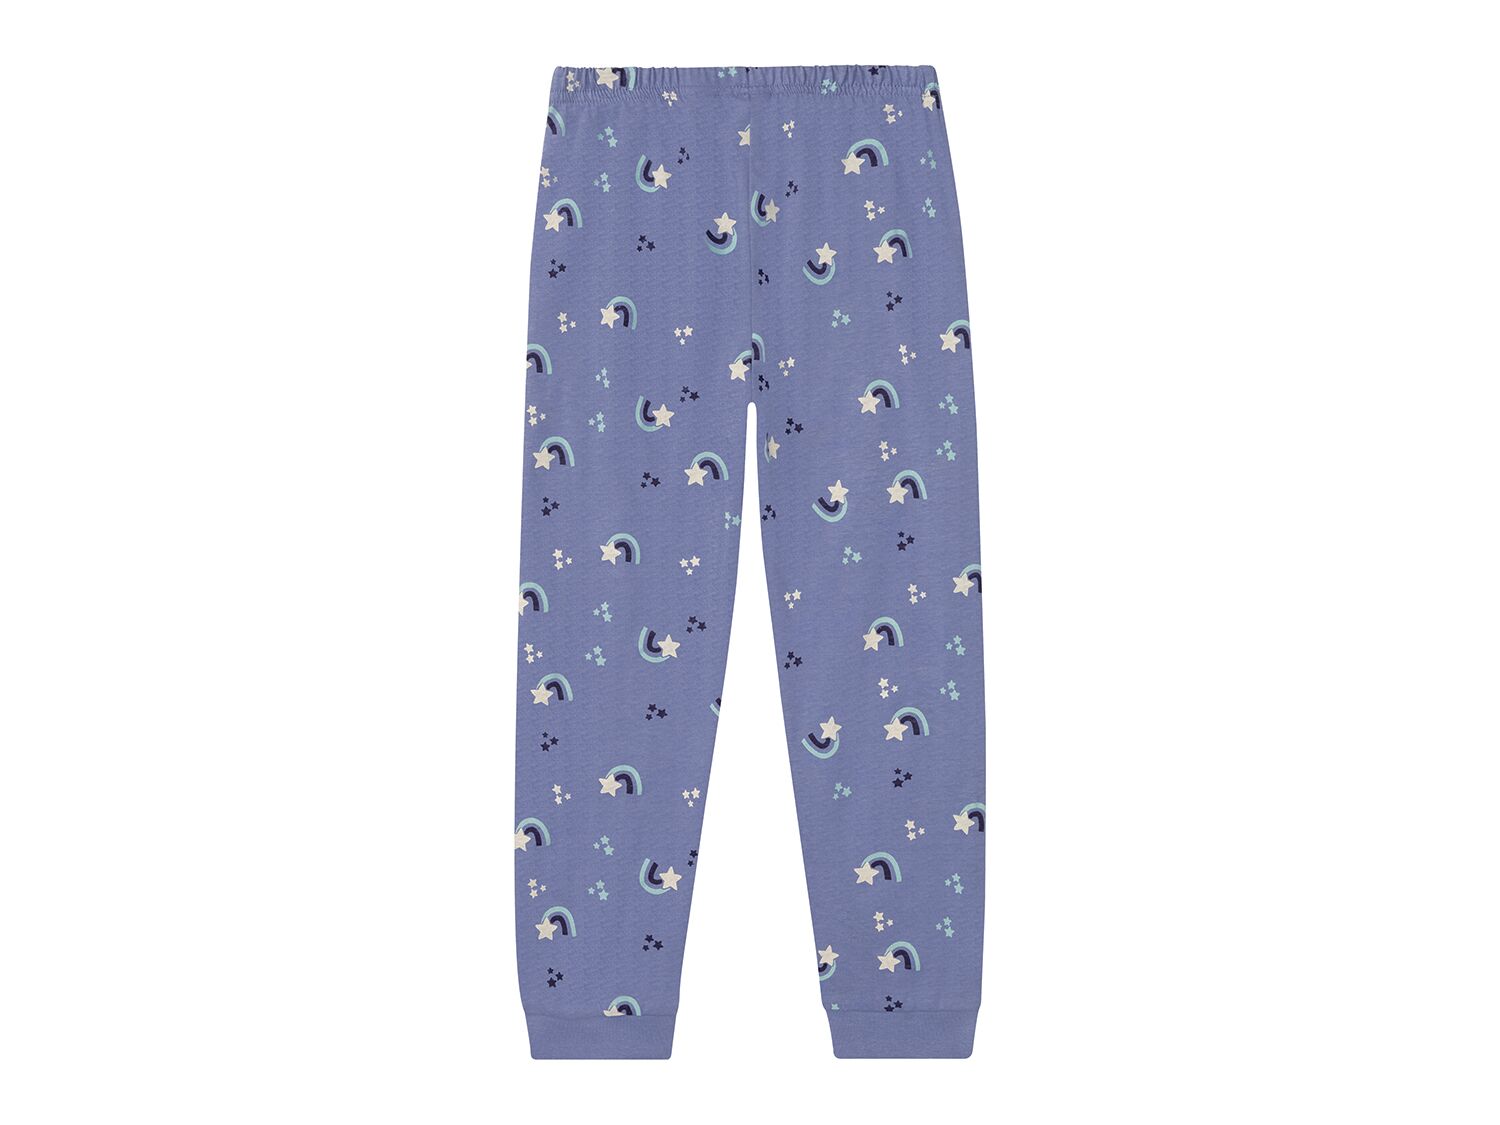 Pijama infantil con pantalon estampado